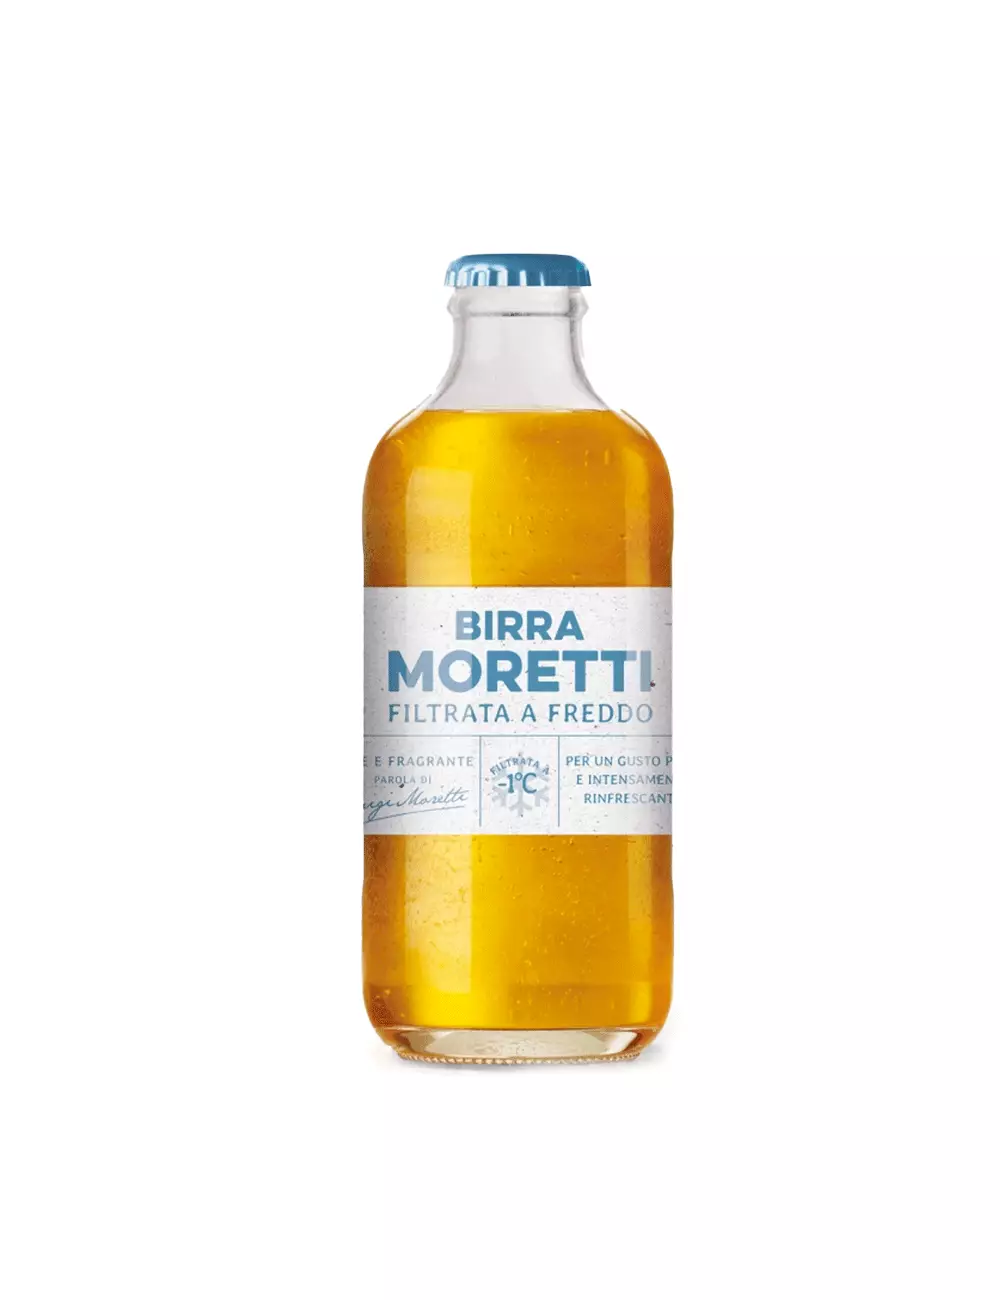 Moretti Cold Filtered Beer 24 30 cl bottles